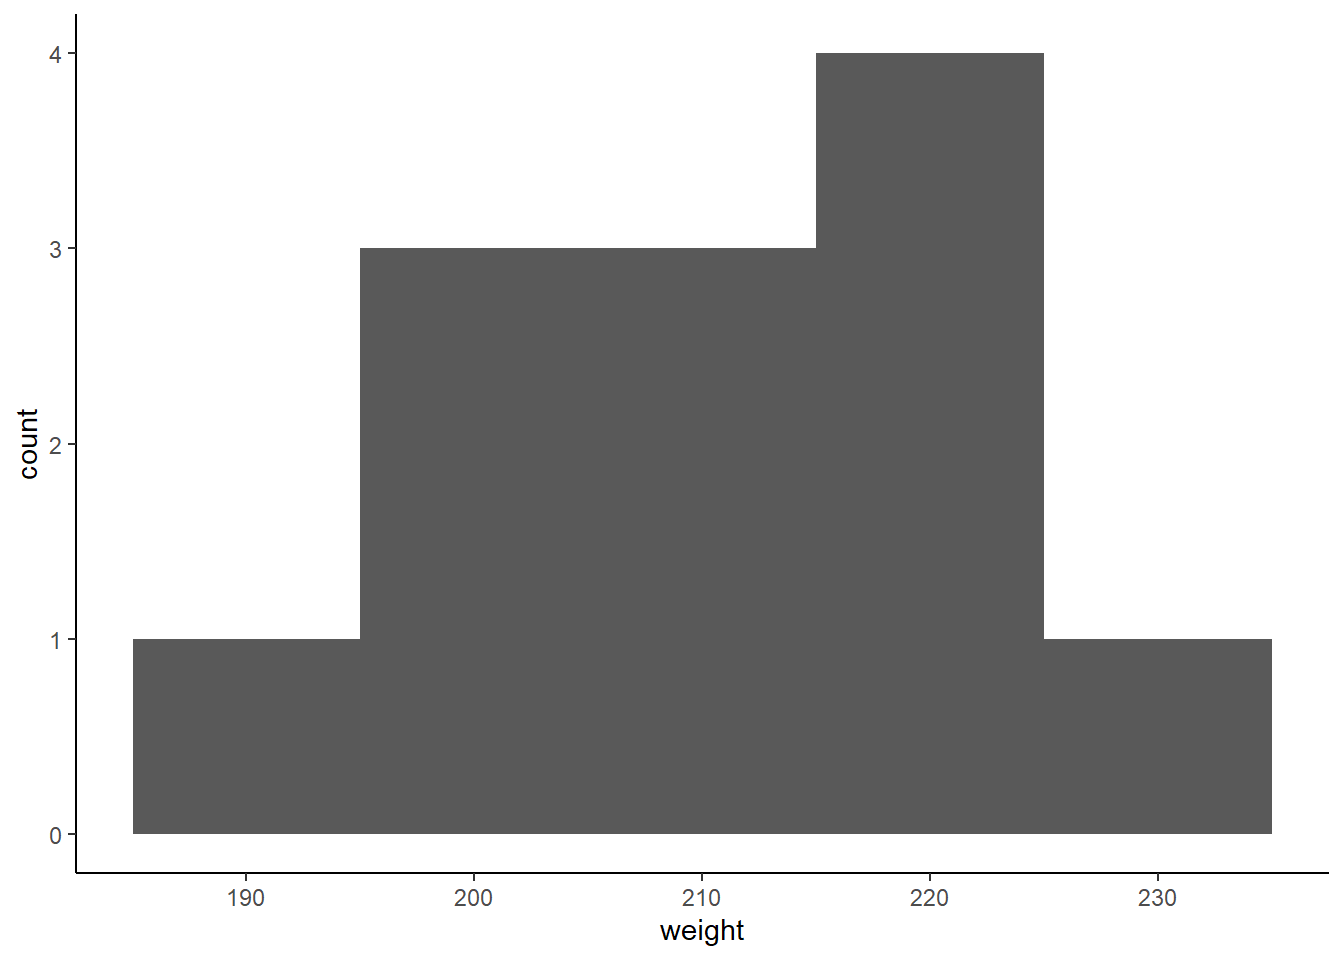 A histogram of heifer weight